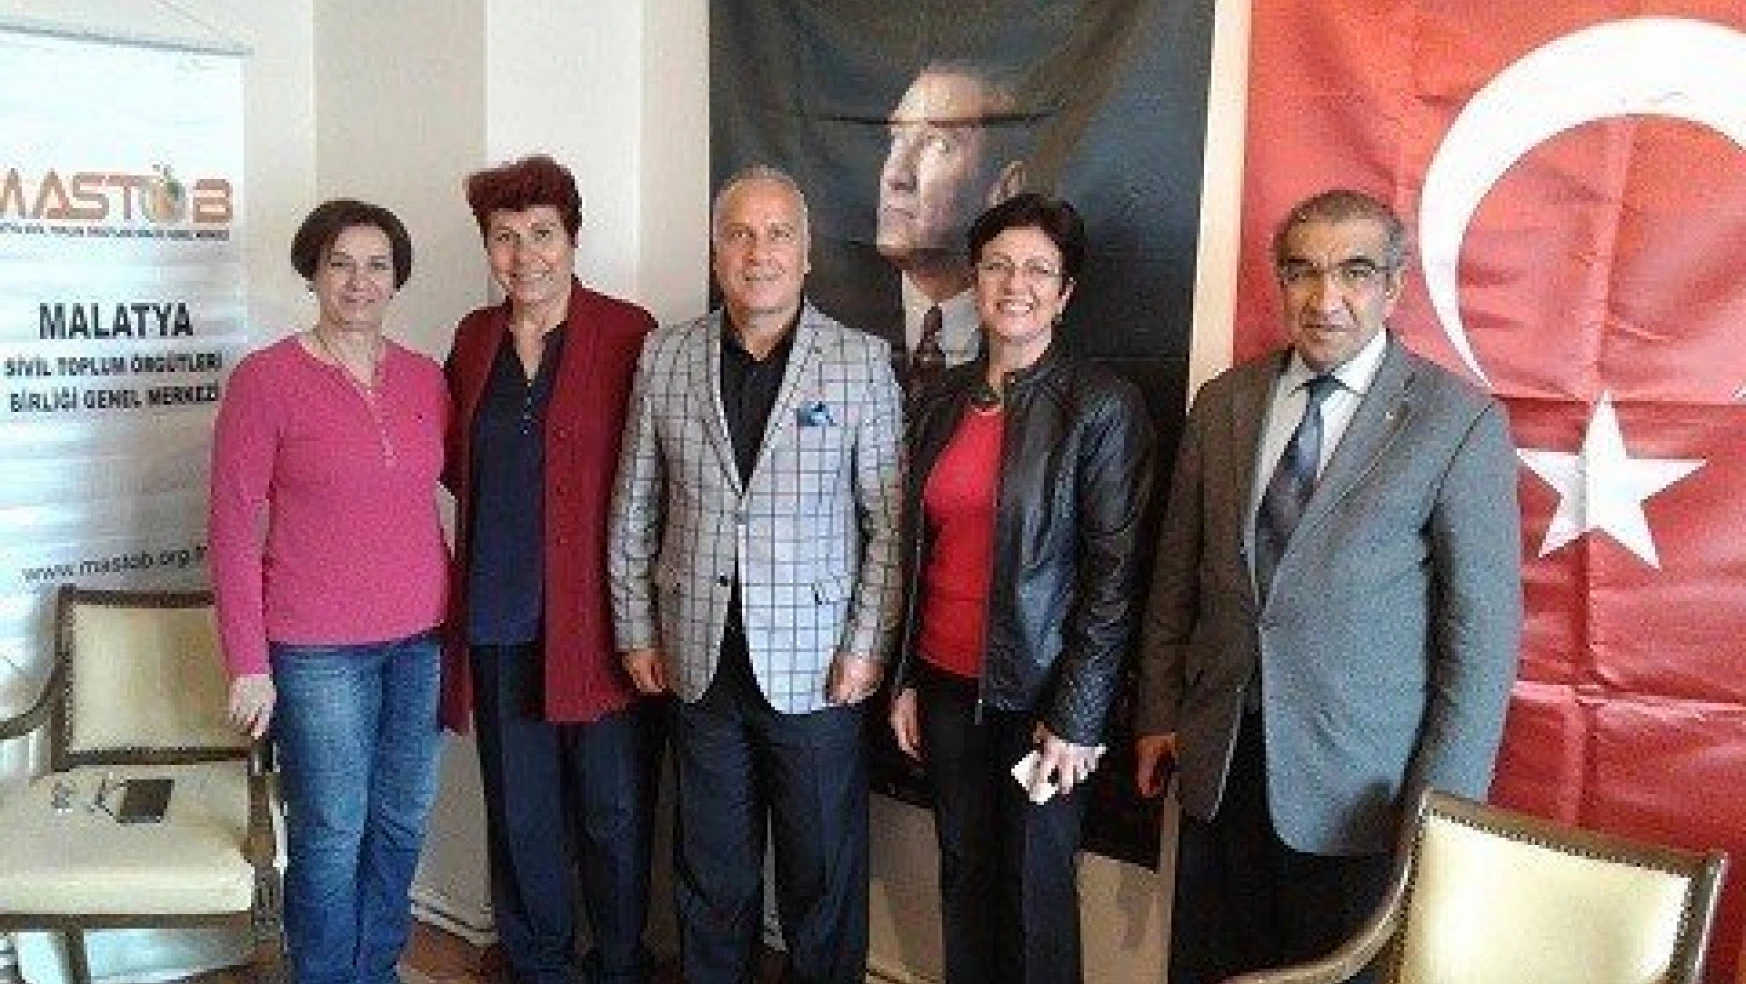 Ankara Elazığlılar Derneği'nden MASTÖB'e tebrik ziyareti
